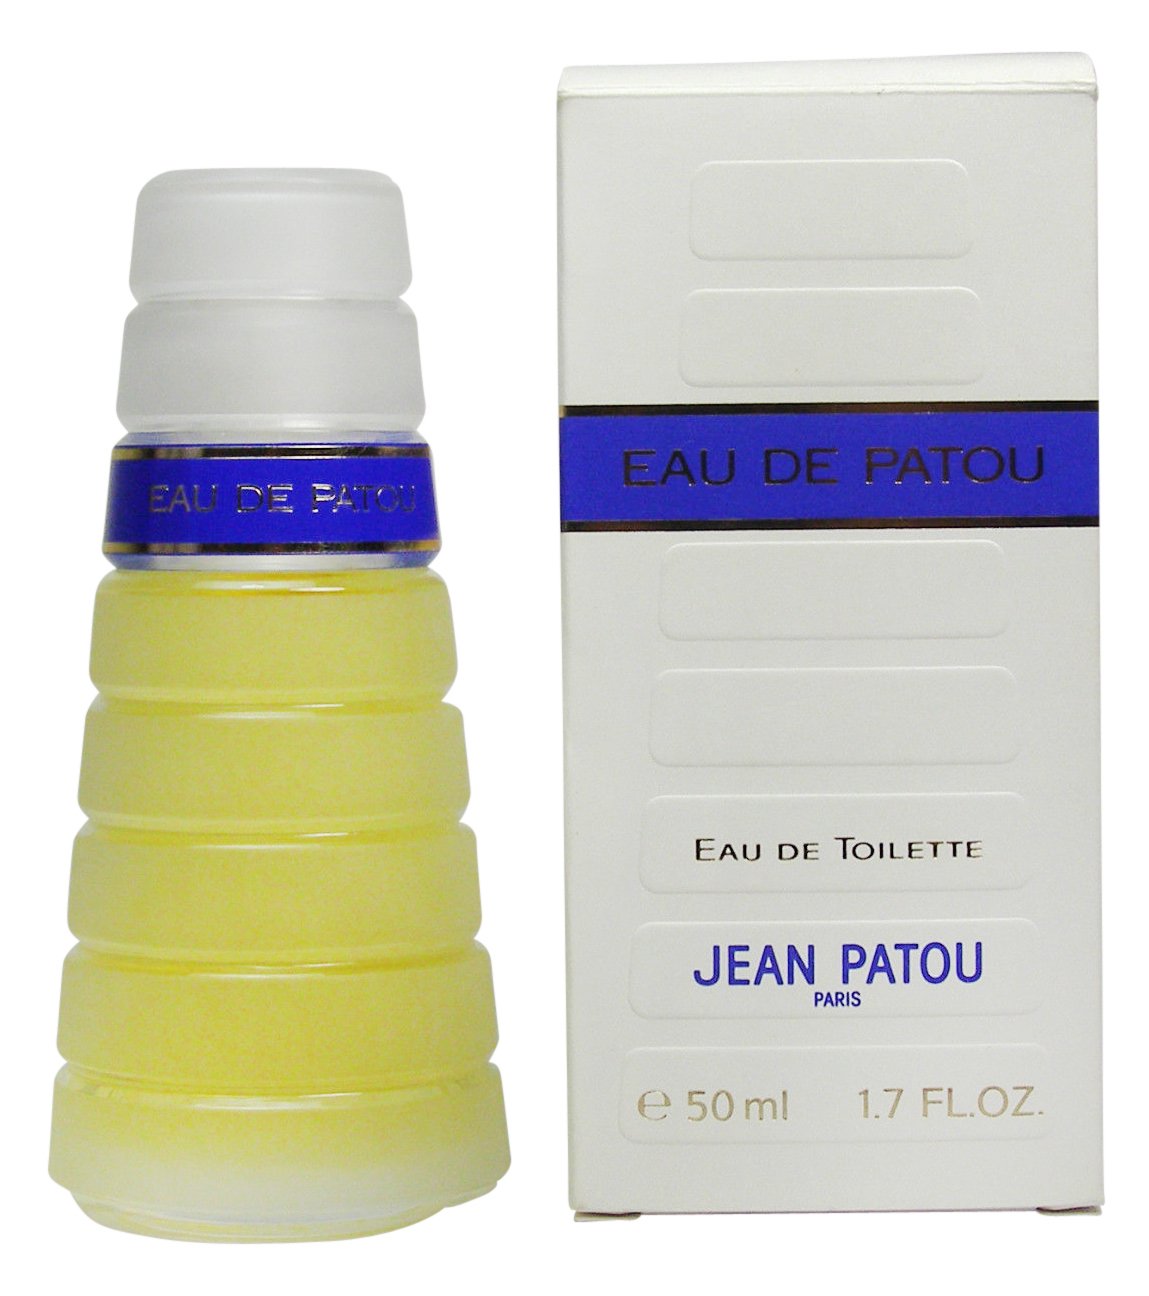 Jean Patou - Eau de Patou | Reviews and Rating